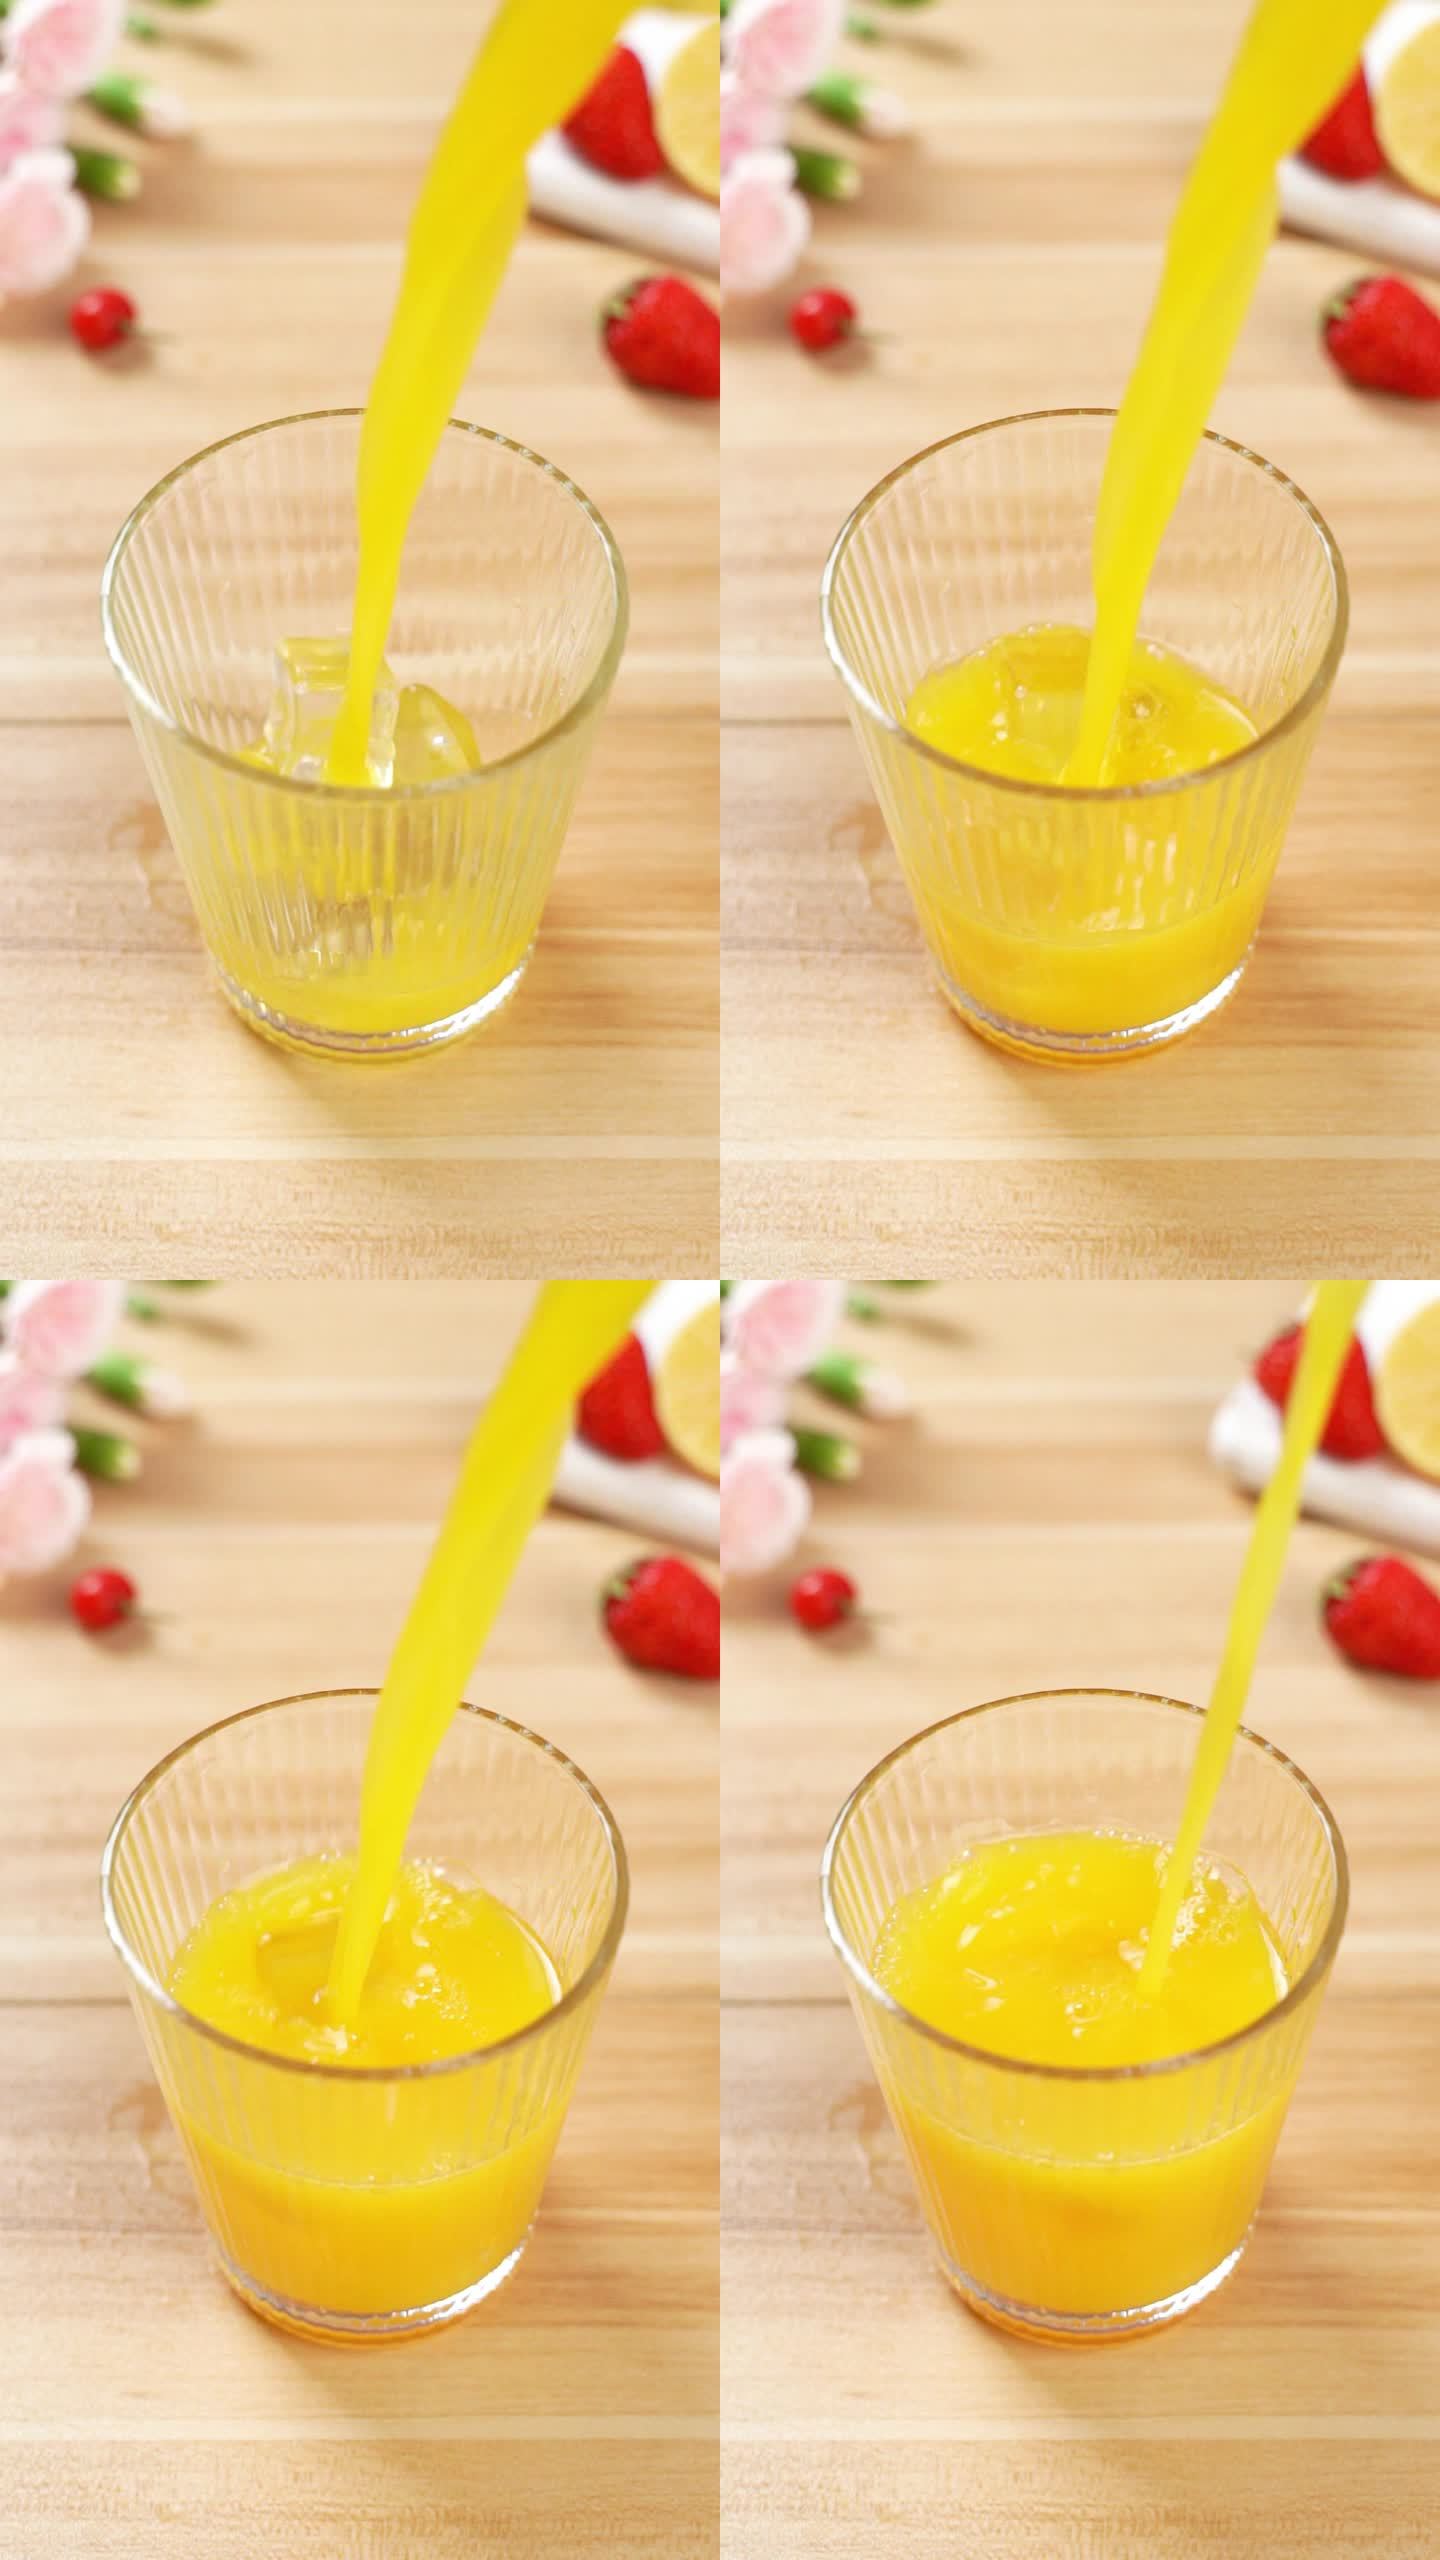 玻璃杯中倒入橙汁